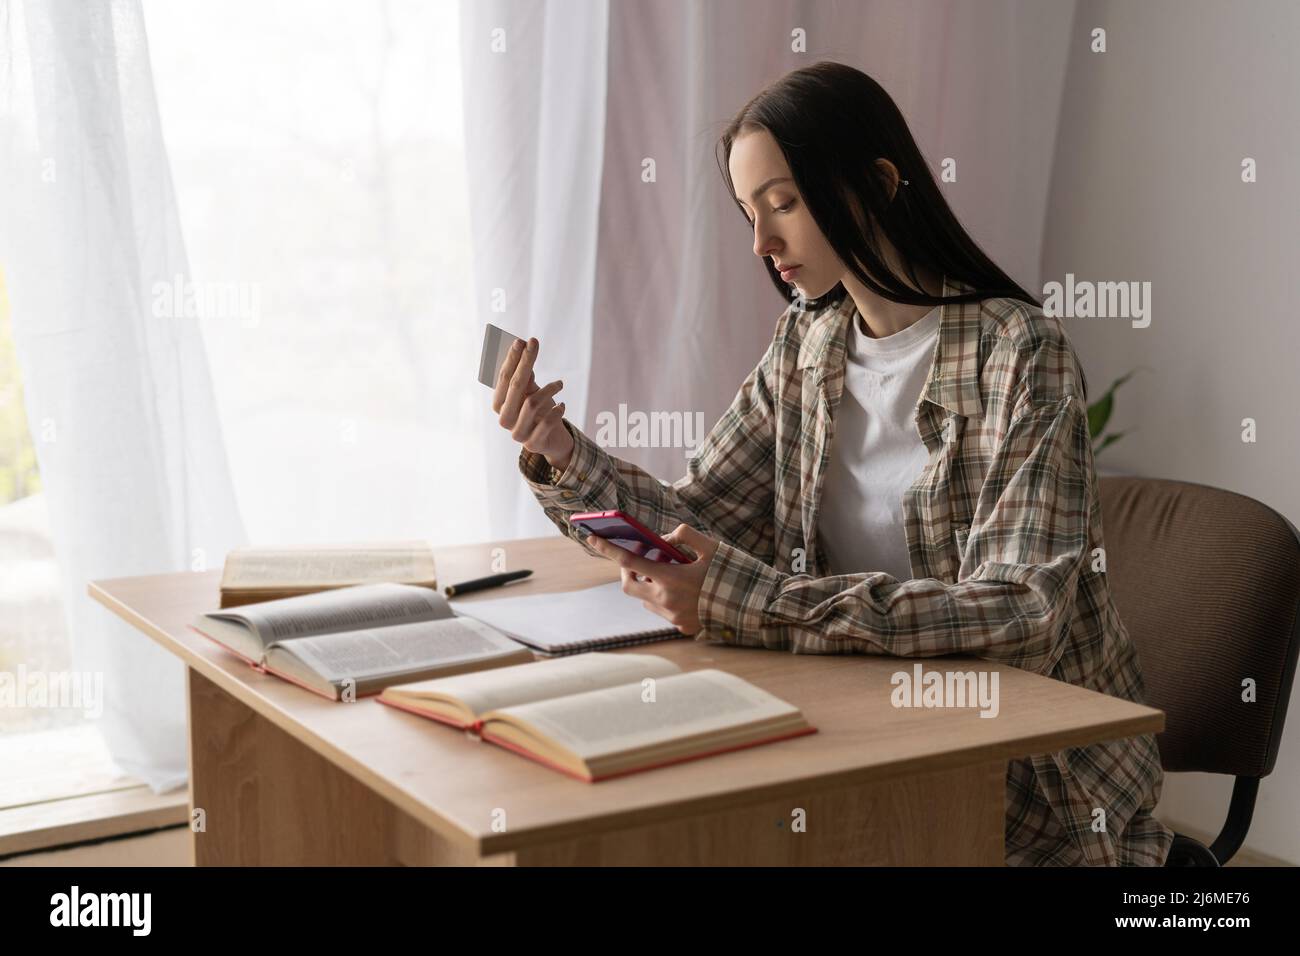 concept de système de paiement sans espèces, jeune fille d'étudiant caucasien shopping en ligne en utilisant la carte de crédit et smartphone, paiements en ligne Banque D'Images